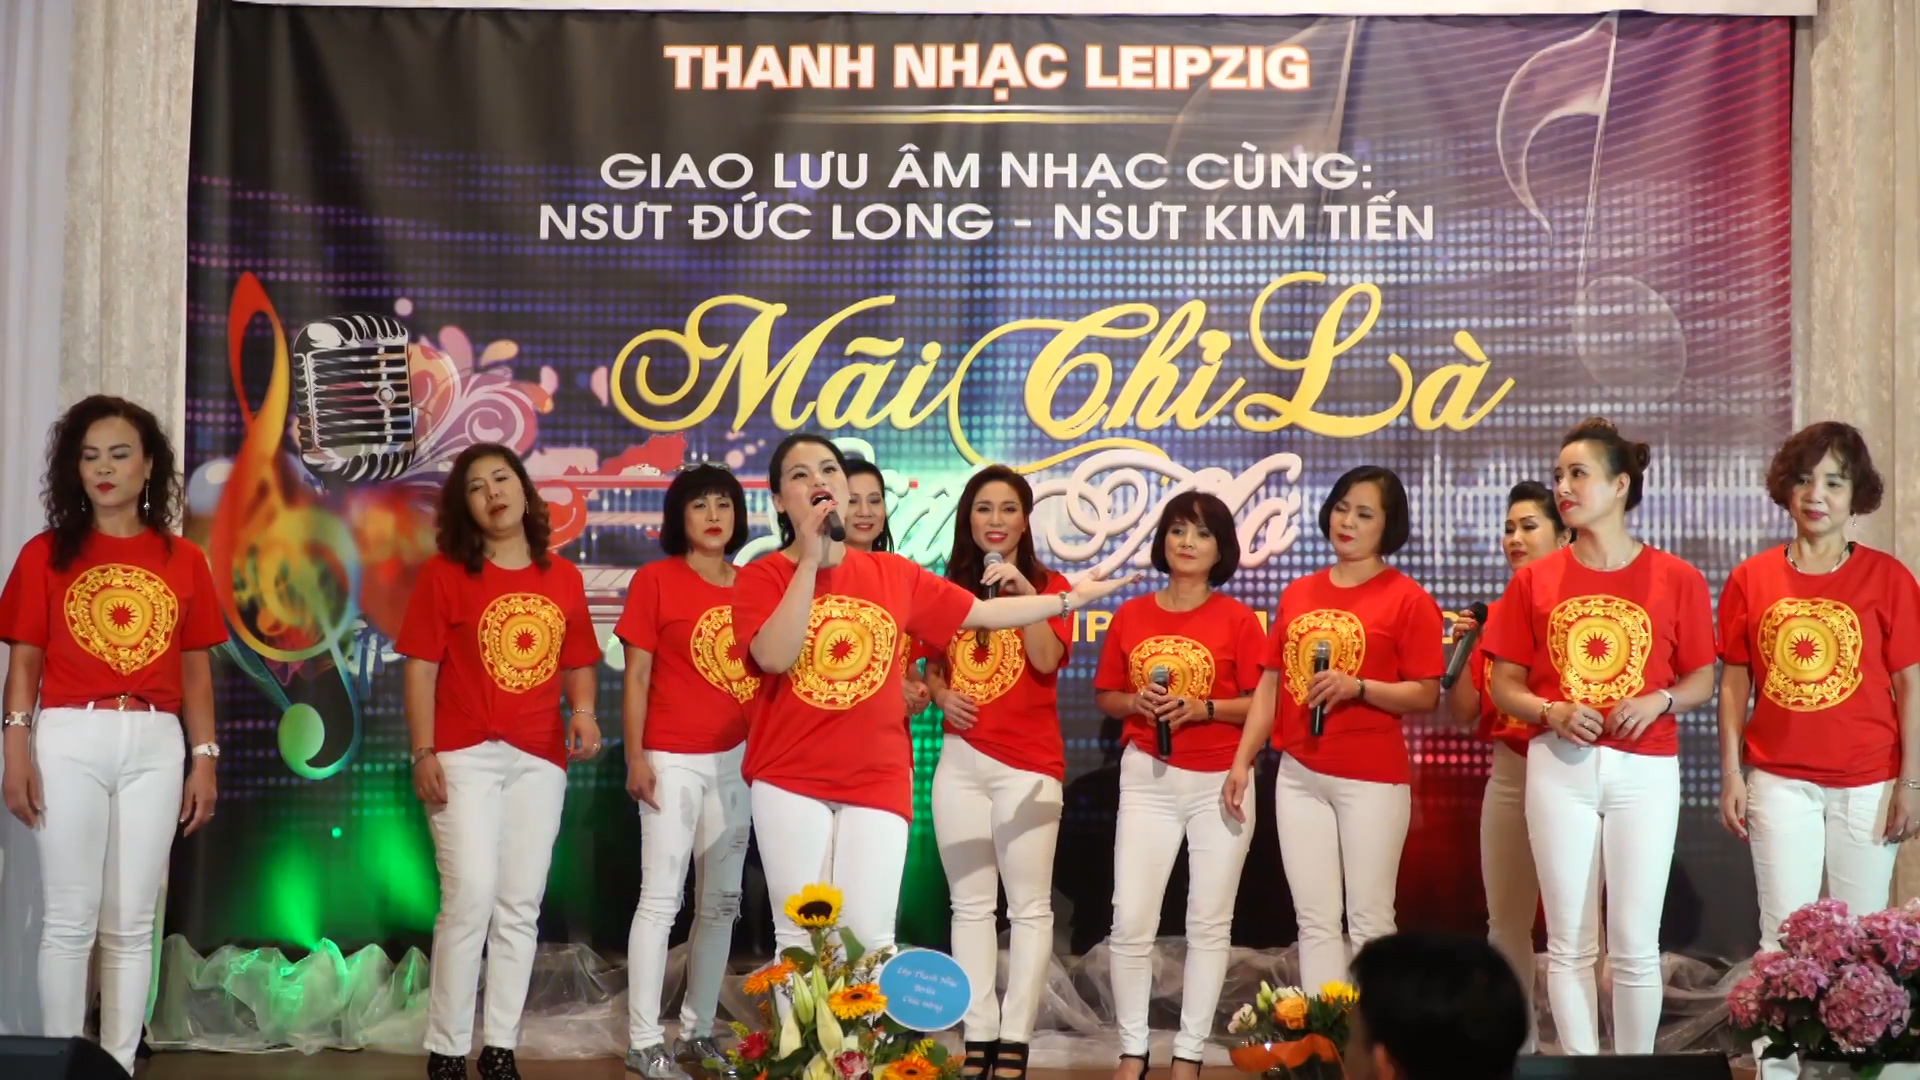 Bế giảng lớp học thanh nhạc cho cộng đồng người Việt tại Leipzig, Cộng hòa Liên bang Đức